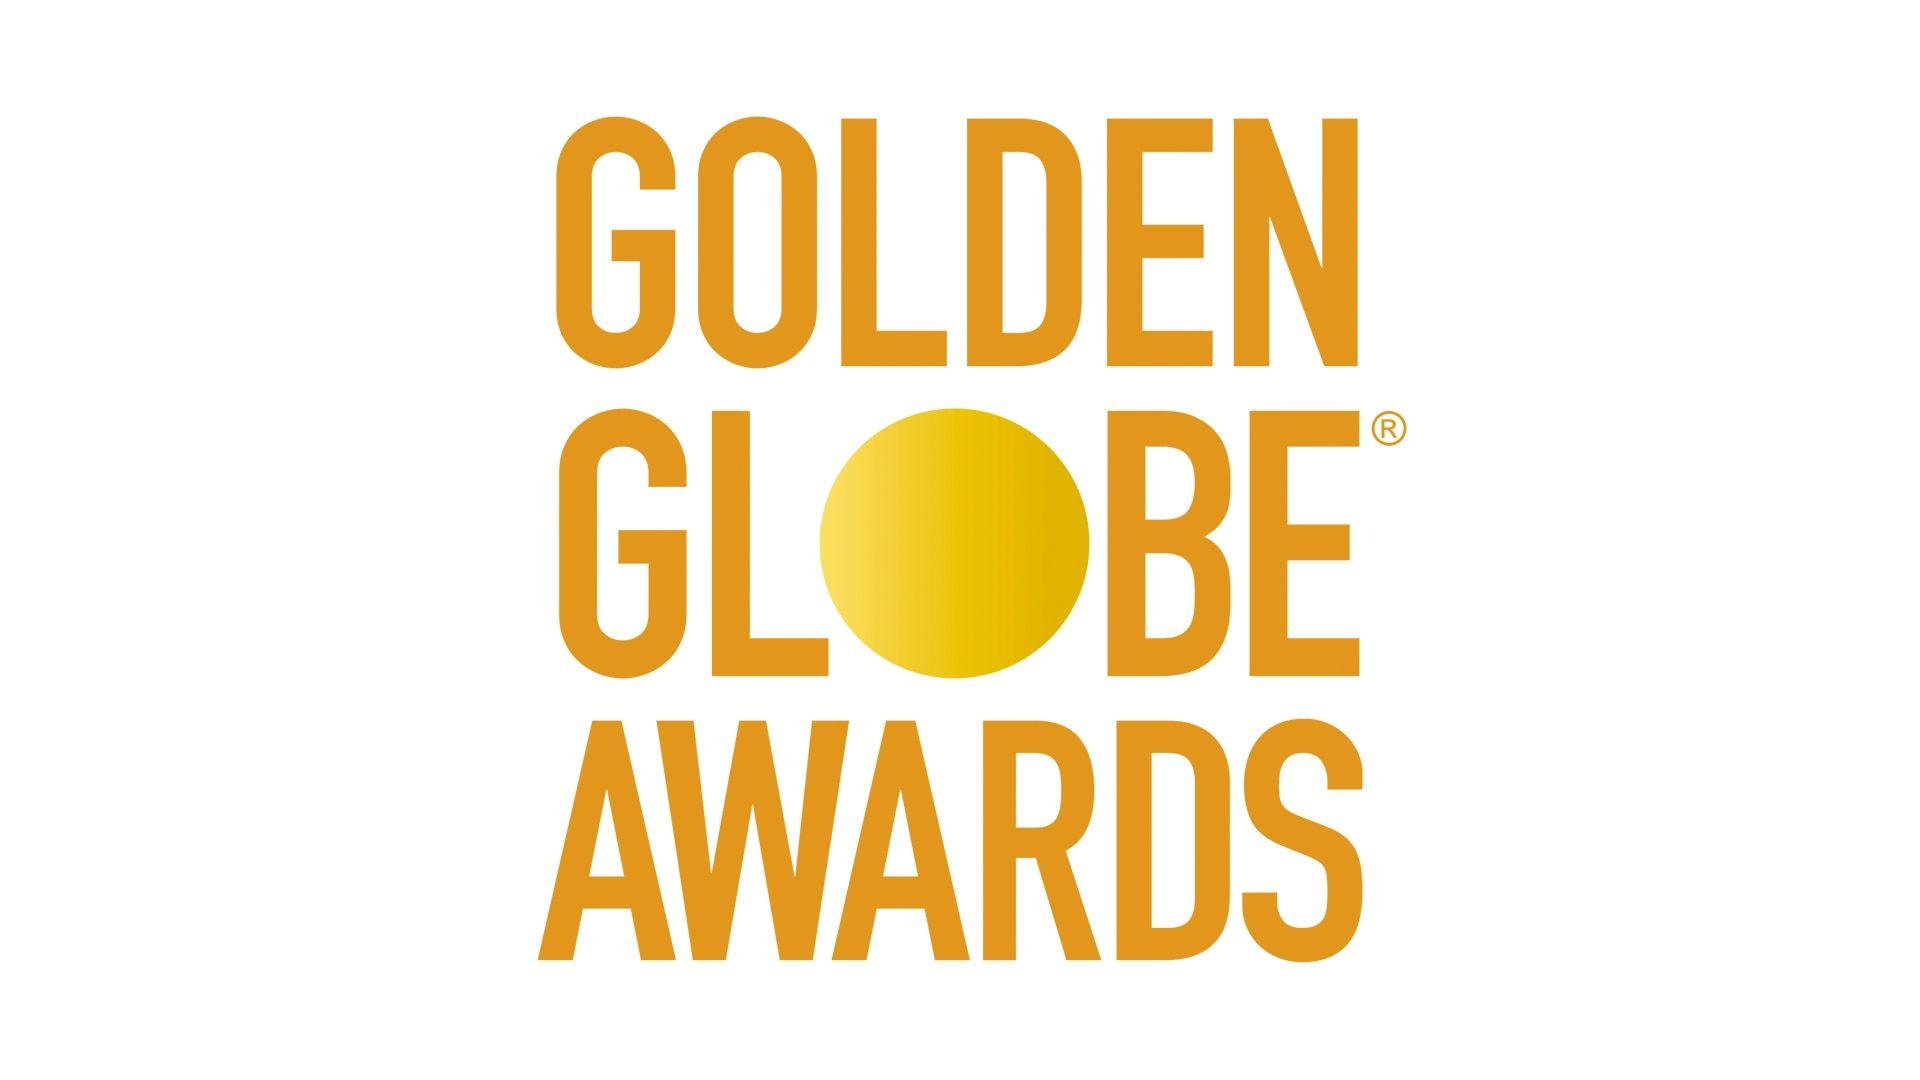 Golden Globes Logo - The Golden Globe Awards